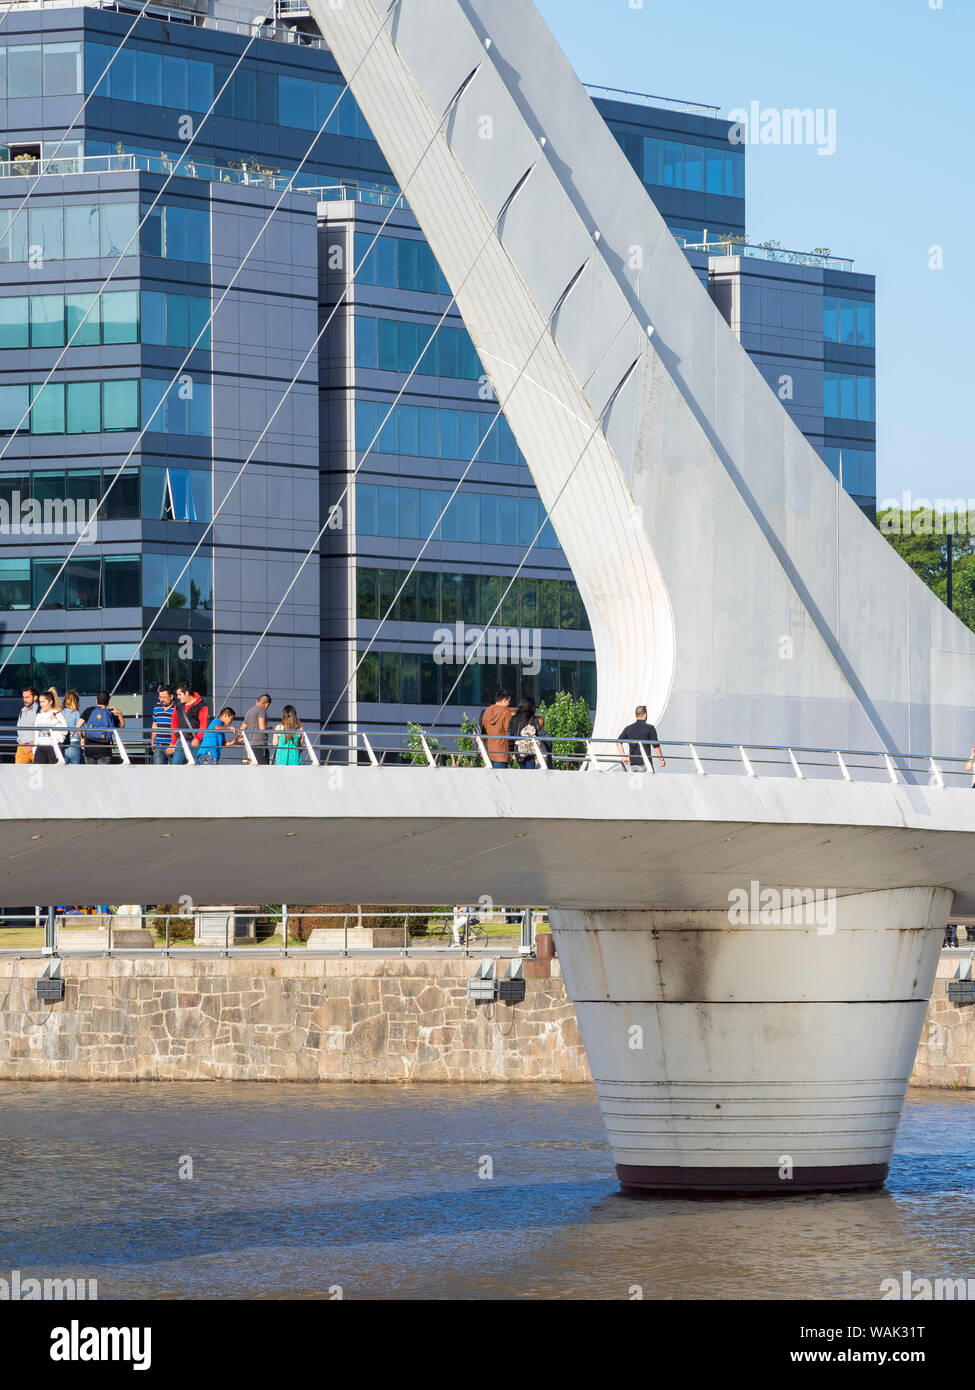 Puente de La Mujer, eine drehende Fußgängerbrücke, entworfen vom Architekten Santiago Calatrava. Puerto Madero, das moderne Leben Viertel um den alten Hafen von Buenos Aires. Südamerika, Argentinien. (Redaktionelle nur verwenden) Stockfoto